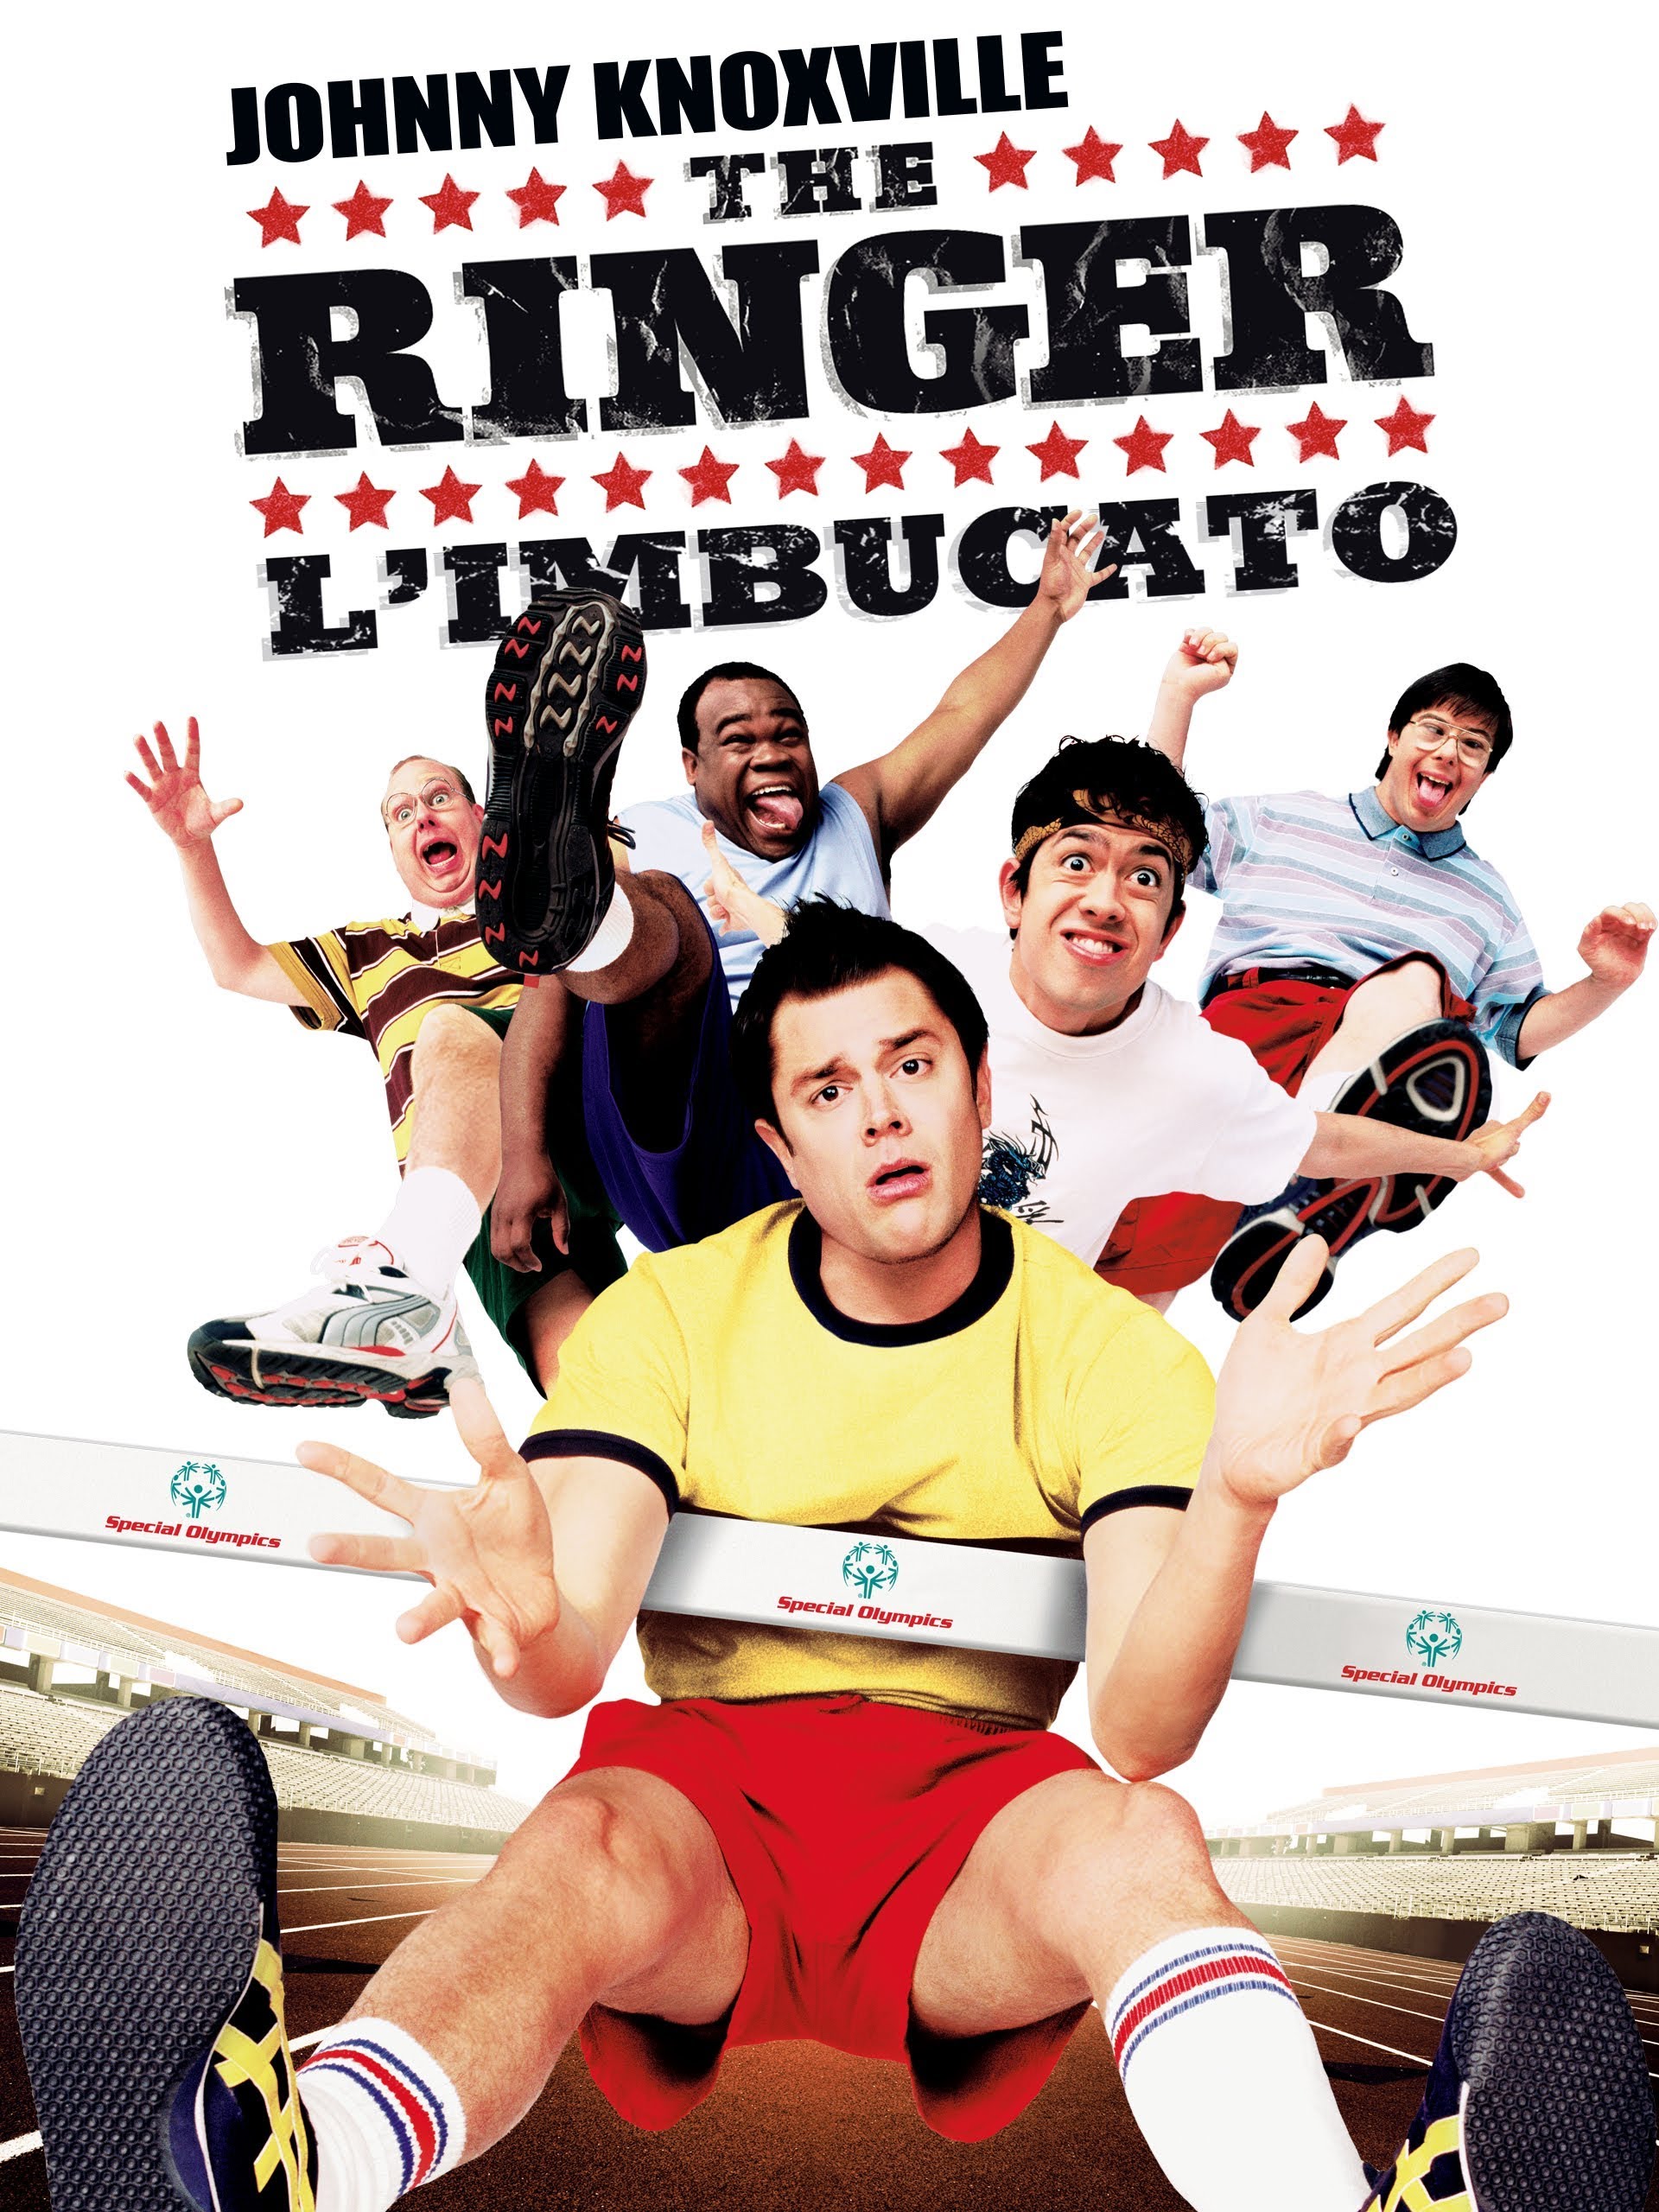 The Ringer – L’imbucato [HD] (2006)